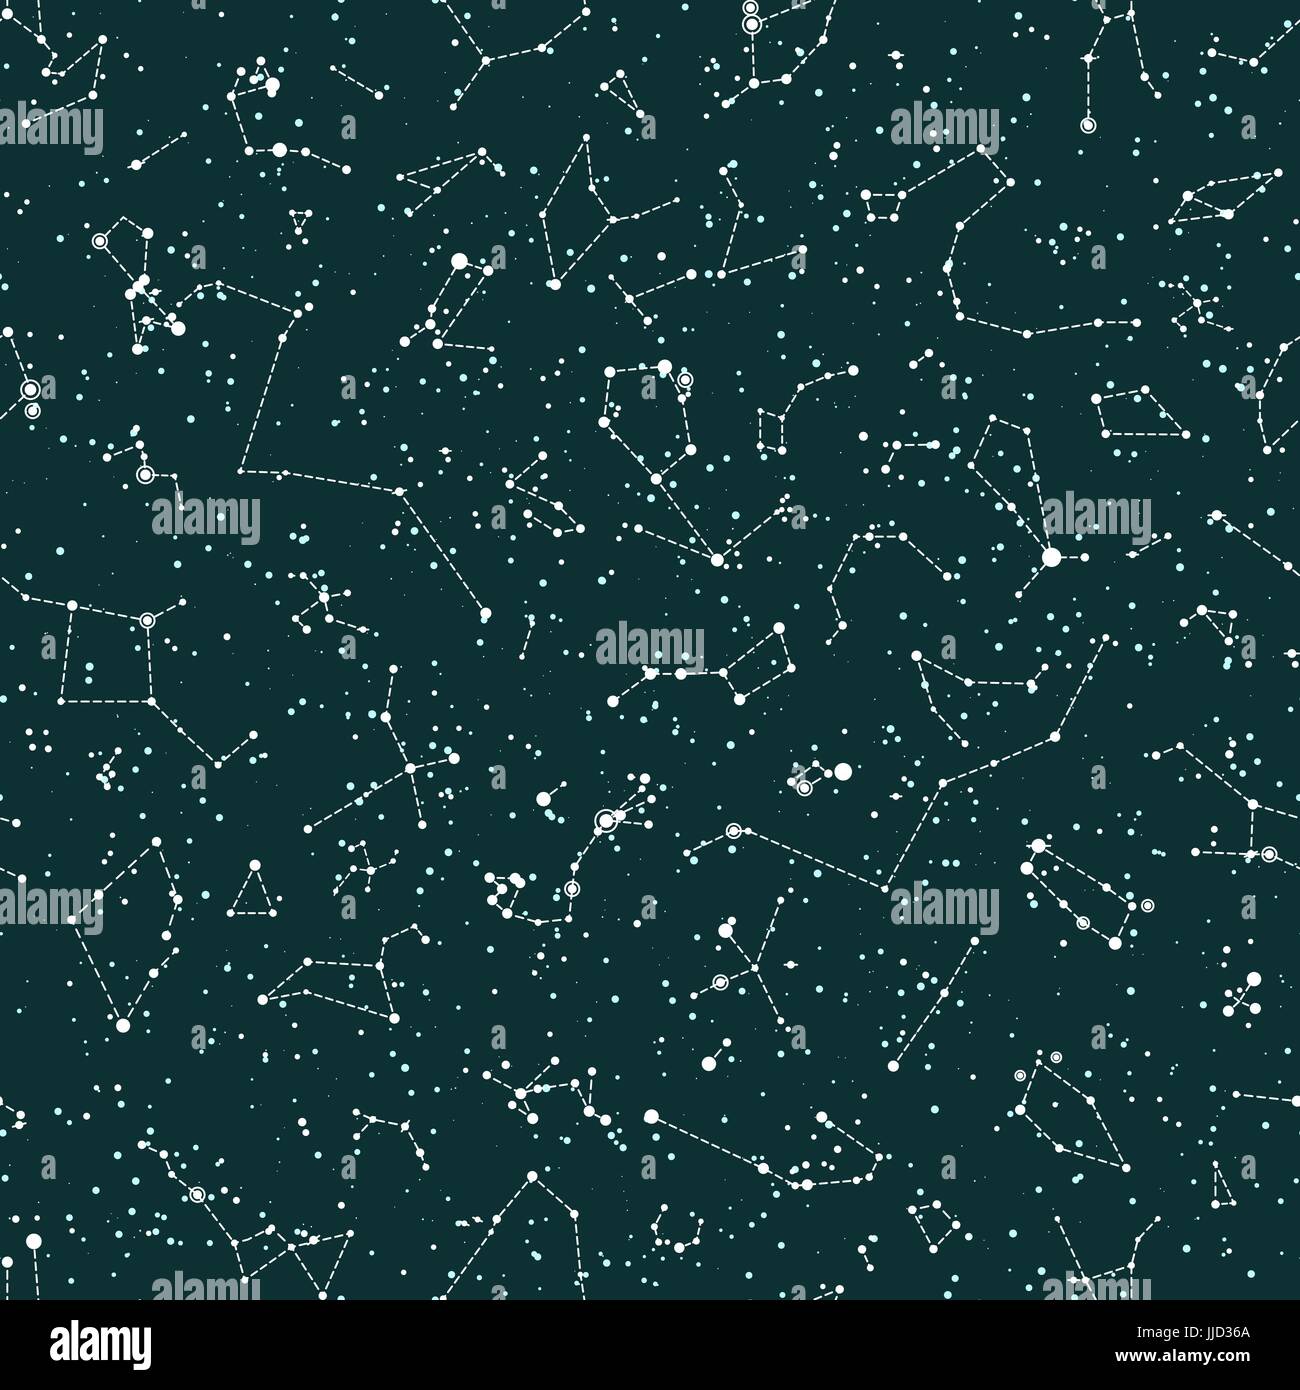 Vektor Musterdesign mit Konstellationen auf grüne Tafel Hintergrund. Astronomie-wissenschaftliche Schule-Hintergrund Stock Vektor